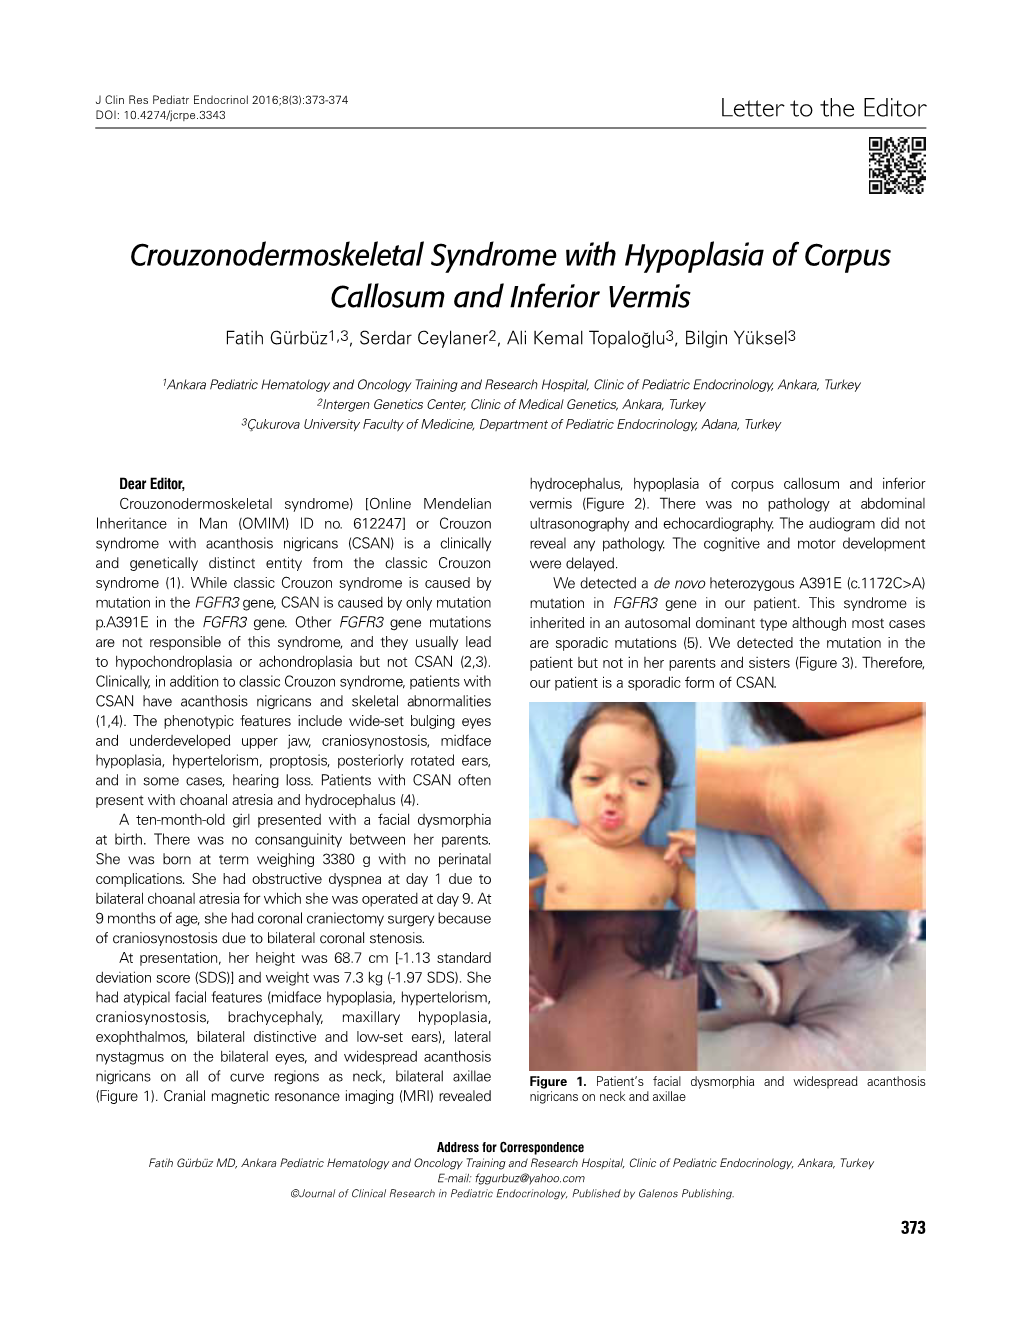 Crouzonodermoskeletal Syndrome with Hypoplasia of Corpus Callosum and Inferior Vermis Fatih Gürbüz1,3, Serdar Ceylaner2, Ali Kemal Topaloğlu3, Bilgin Yüksel3